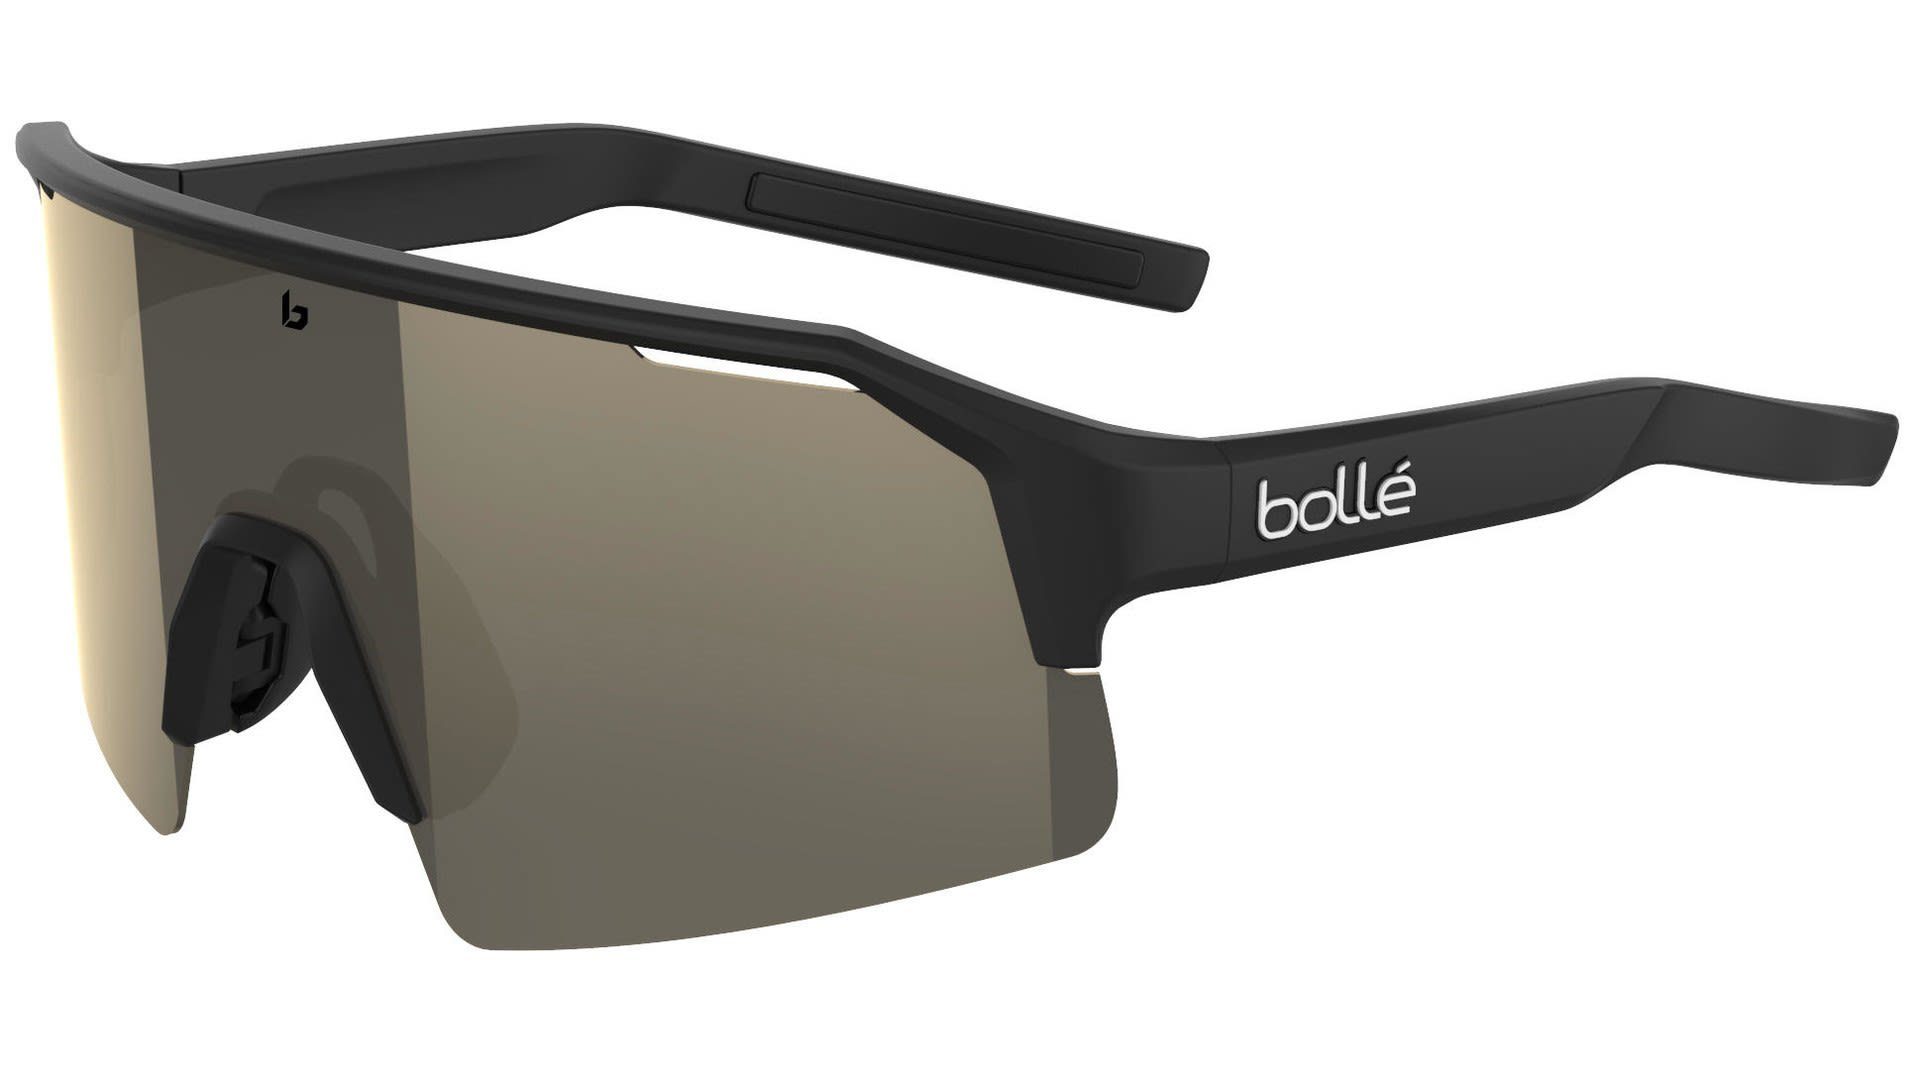 Bolle Sportbrille Gun Bolle Black - C-shifter Matte Accessoires Volt